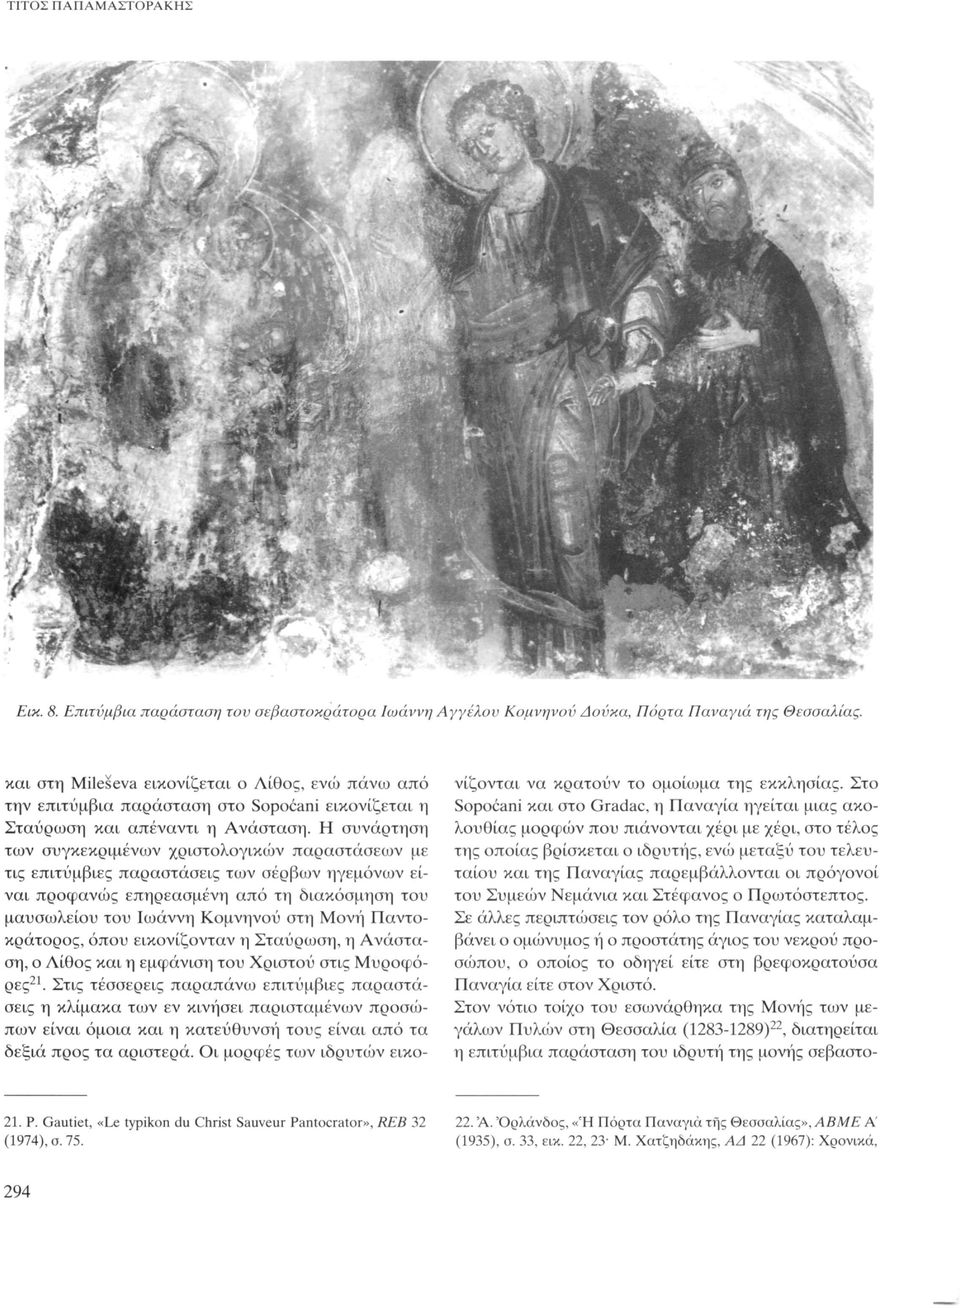 Η συνάρτηση των συγκεκριμένων χριστολογικών παραστάσεων με τις επιτύμβιες παραστάσεις των σέρβων ηγεμόνων είναι προφανώς επηρεασμένη από τη διακόσμηση του μαυσωλείου του Ιωάννη Κομνηνού στη Μονή